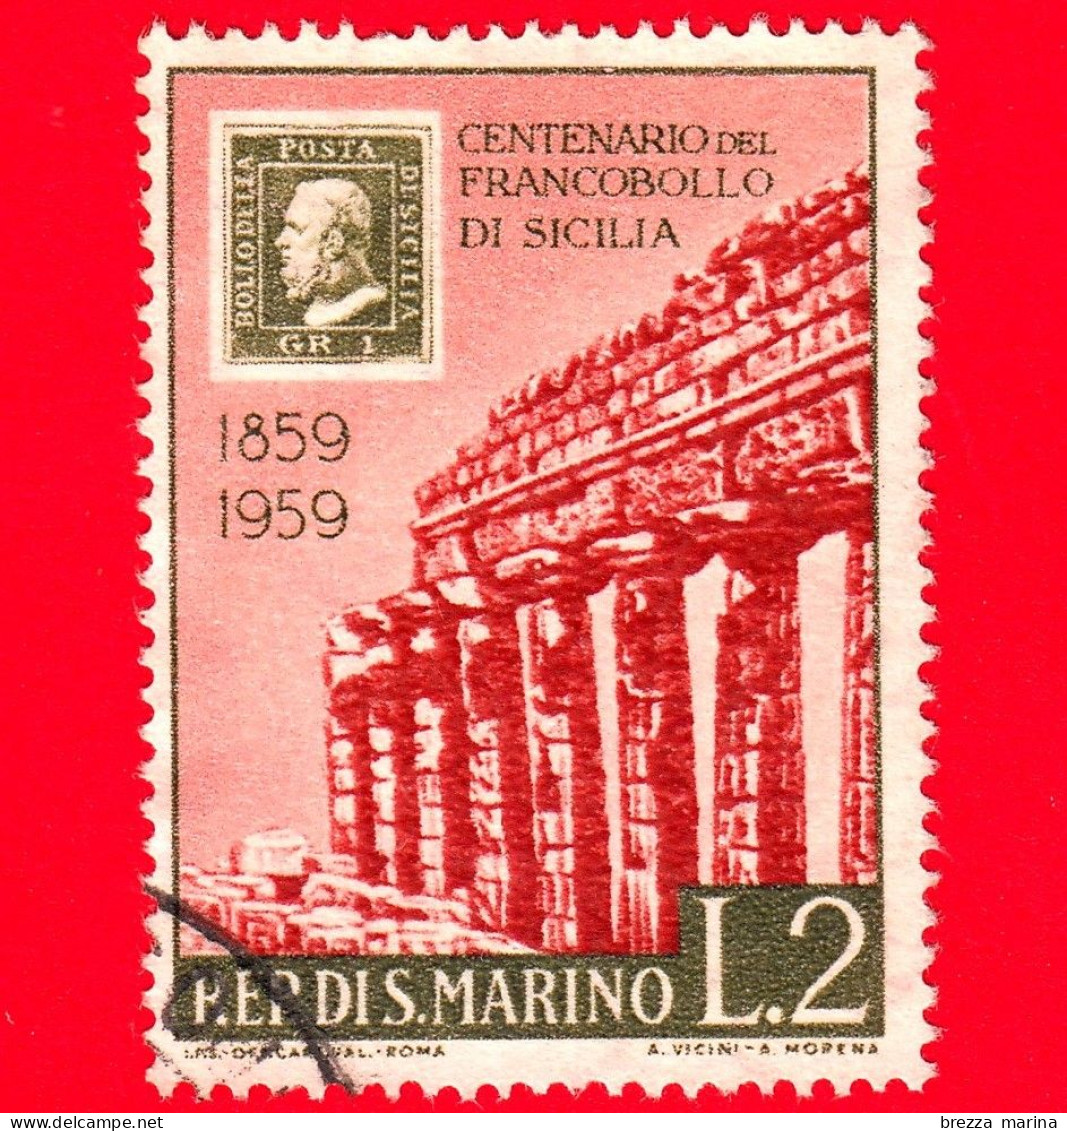 SAN MARINO - Usato - 1959 - Centenario Dei Francobolli Di Sicilia - Tempio Di Selinunte - 2 L. - Used Stamps